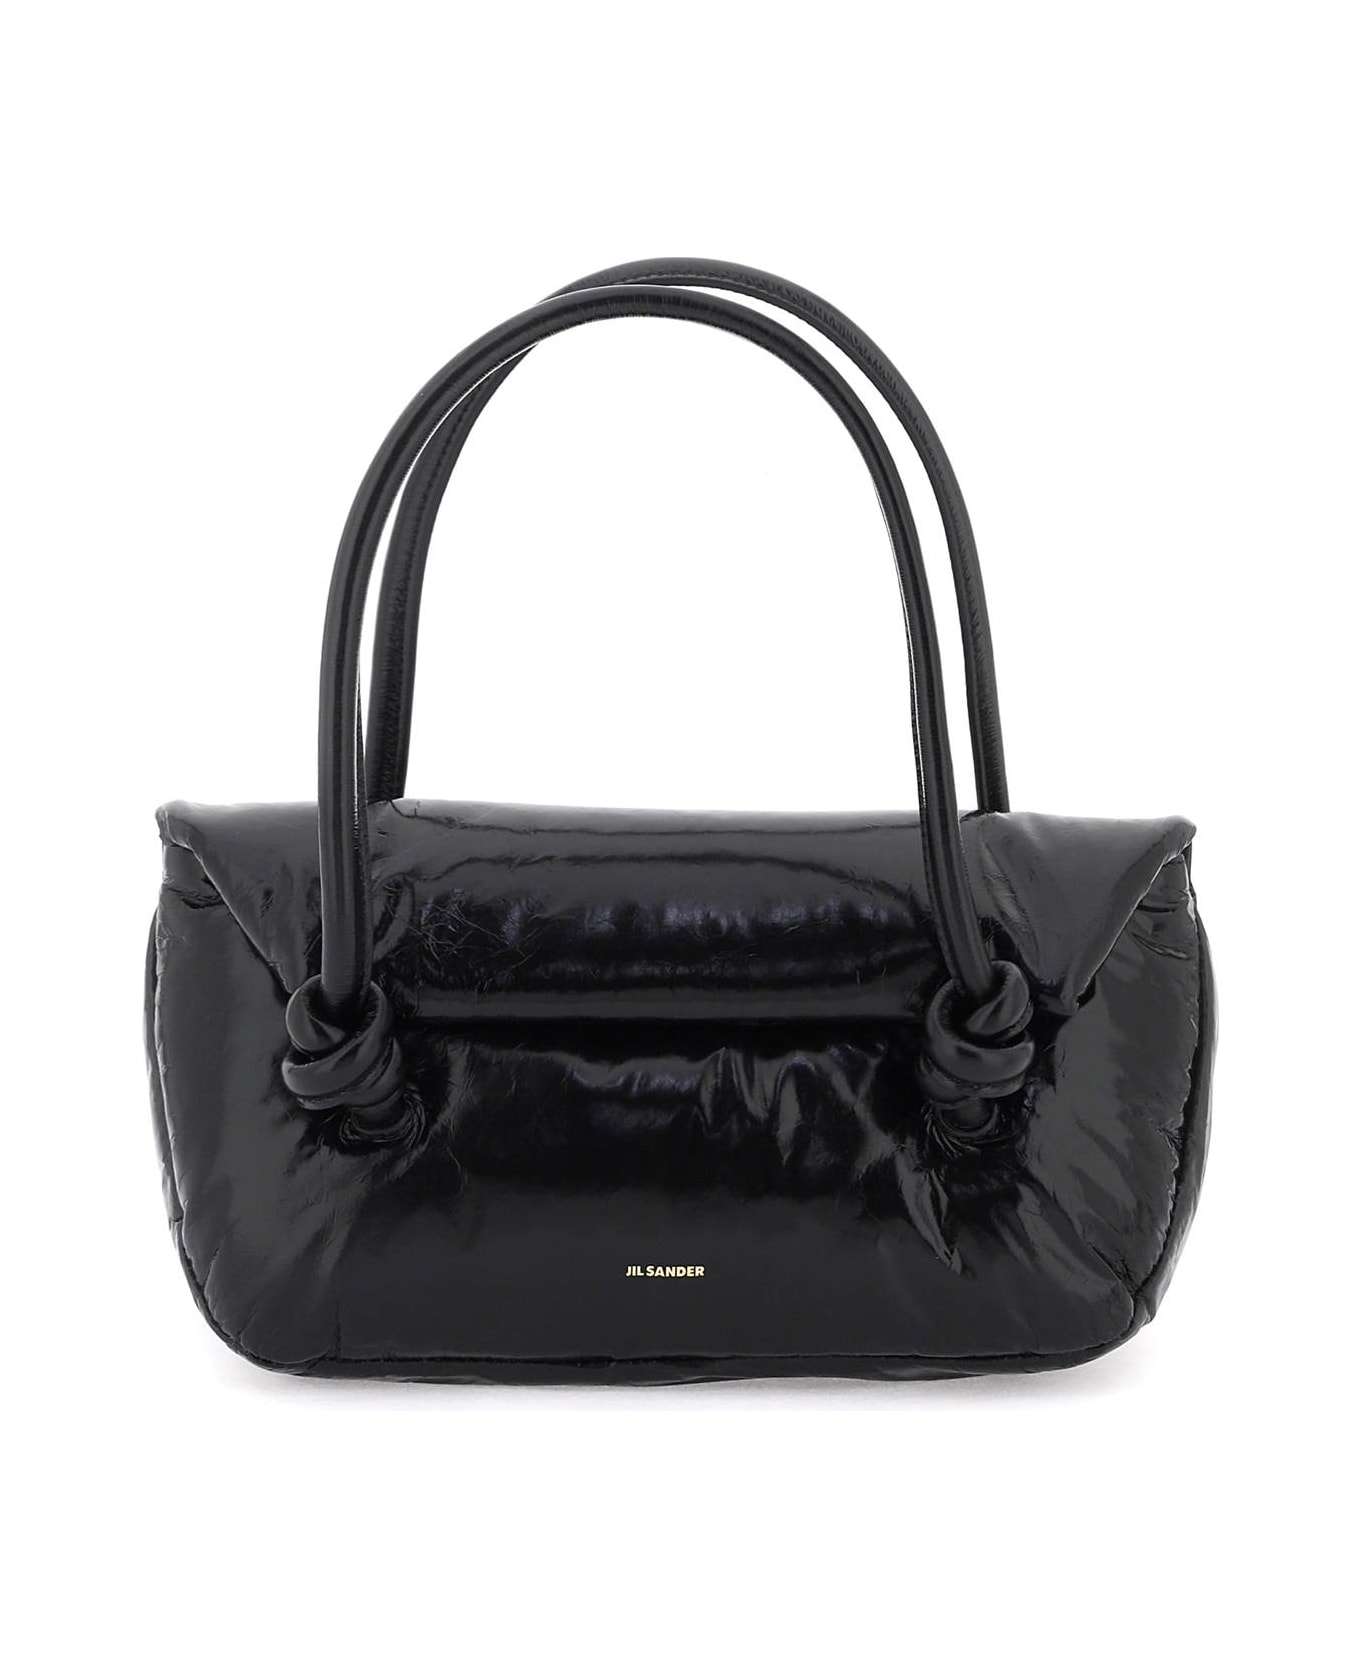 Jil Sander Black Leather Bag - 001